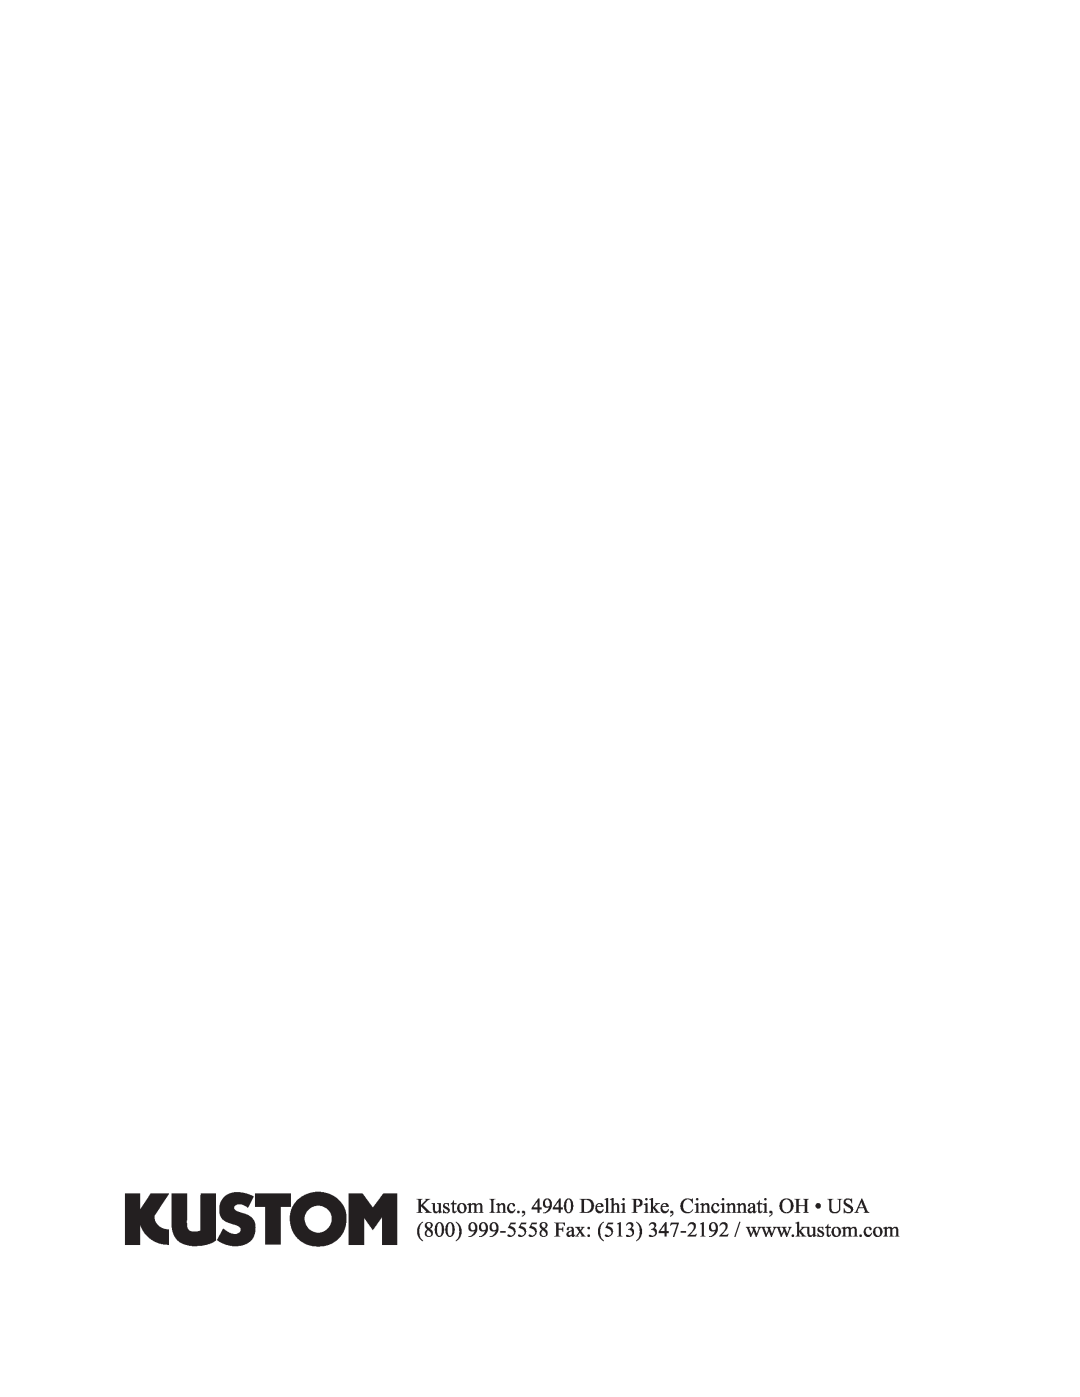 Kustom Quad 200 HD owner manual 